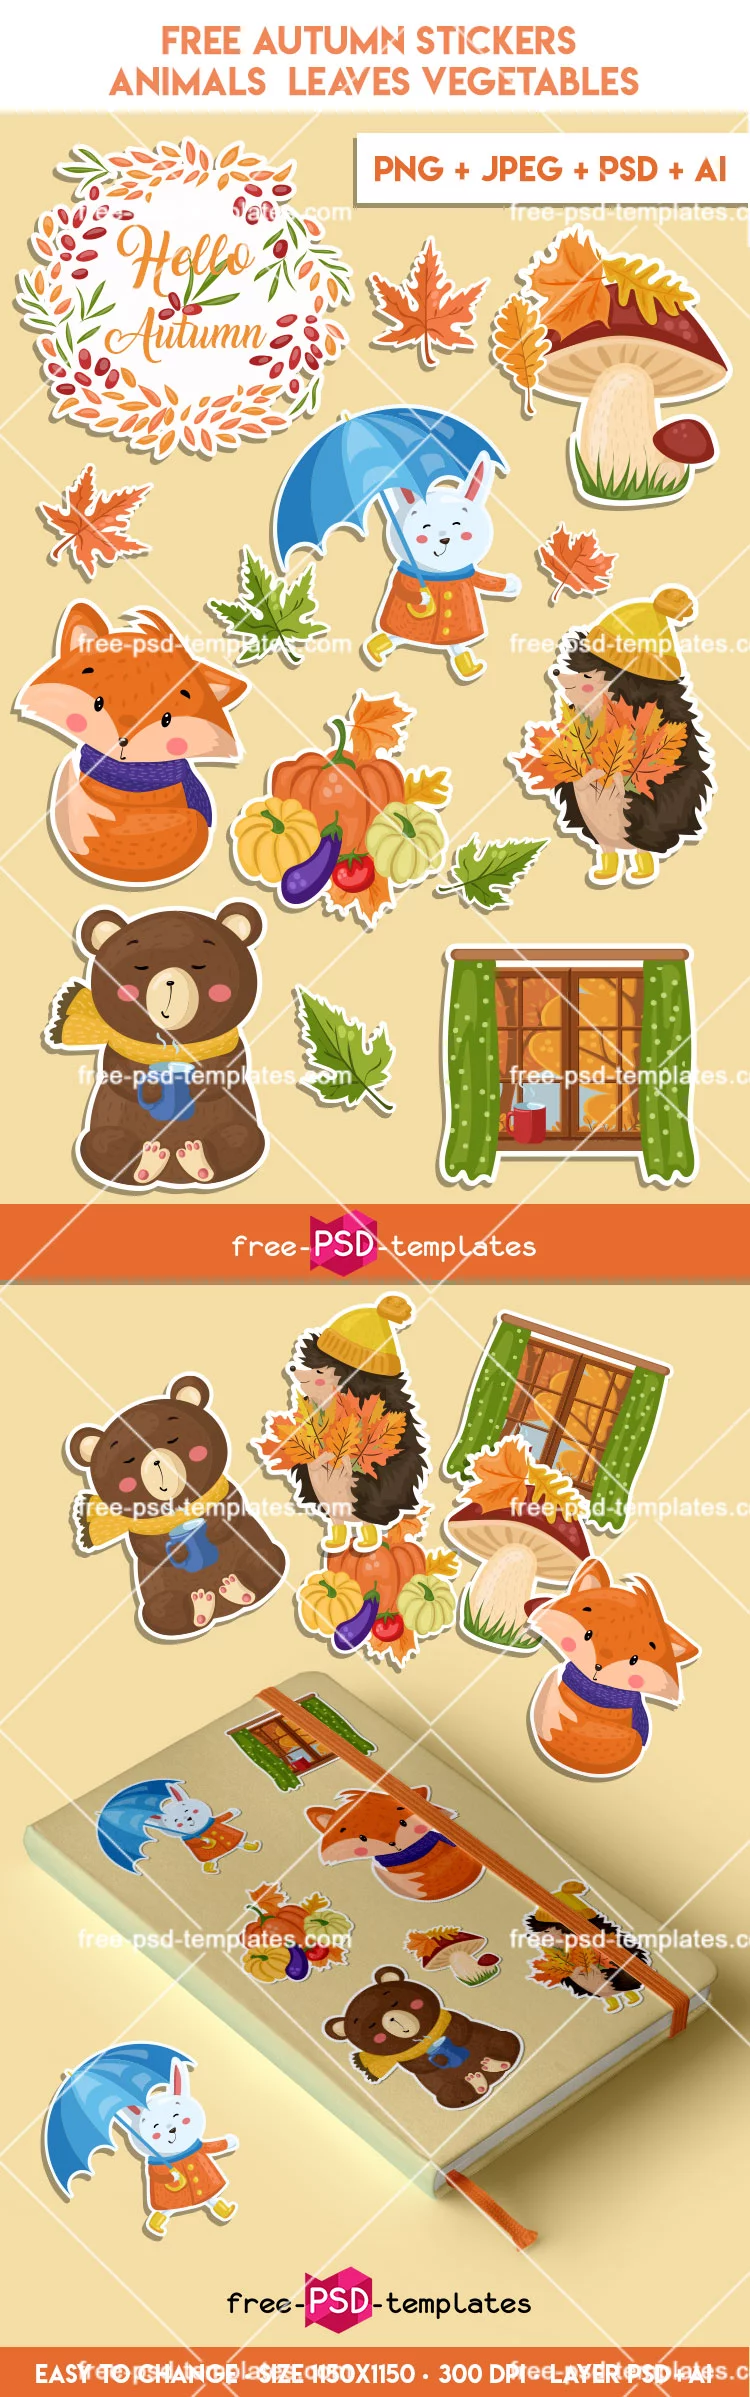 Free Autumn Stickers